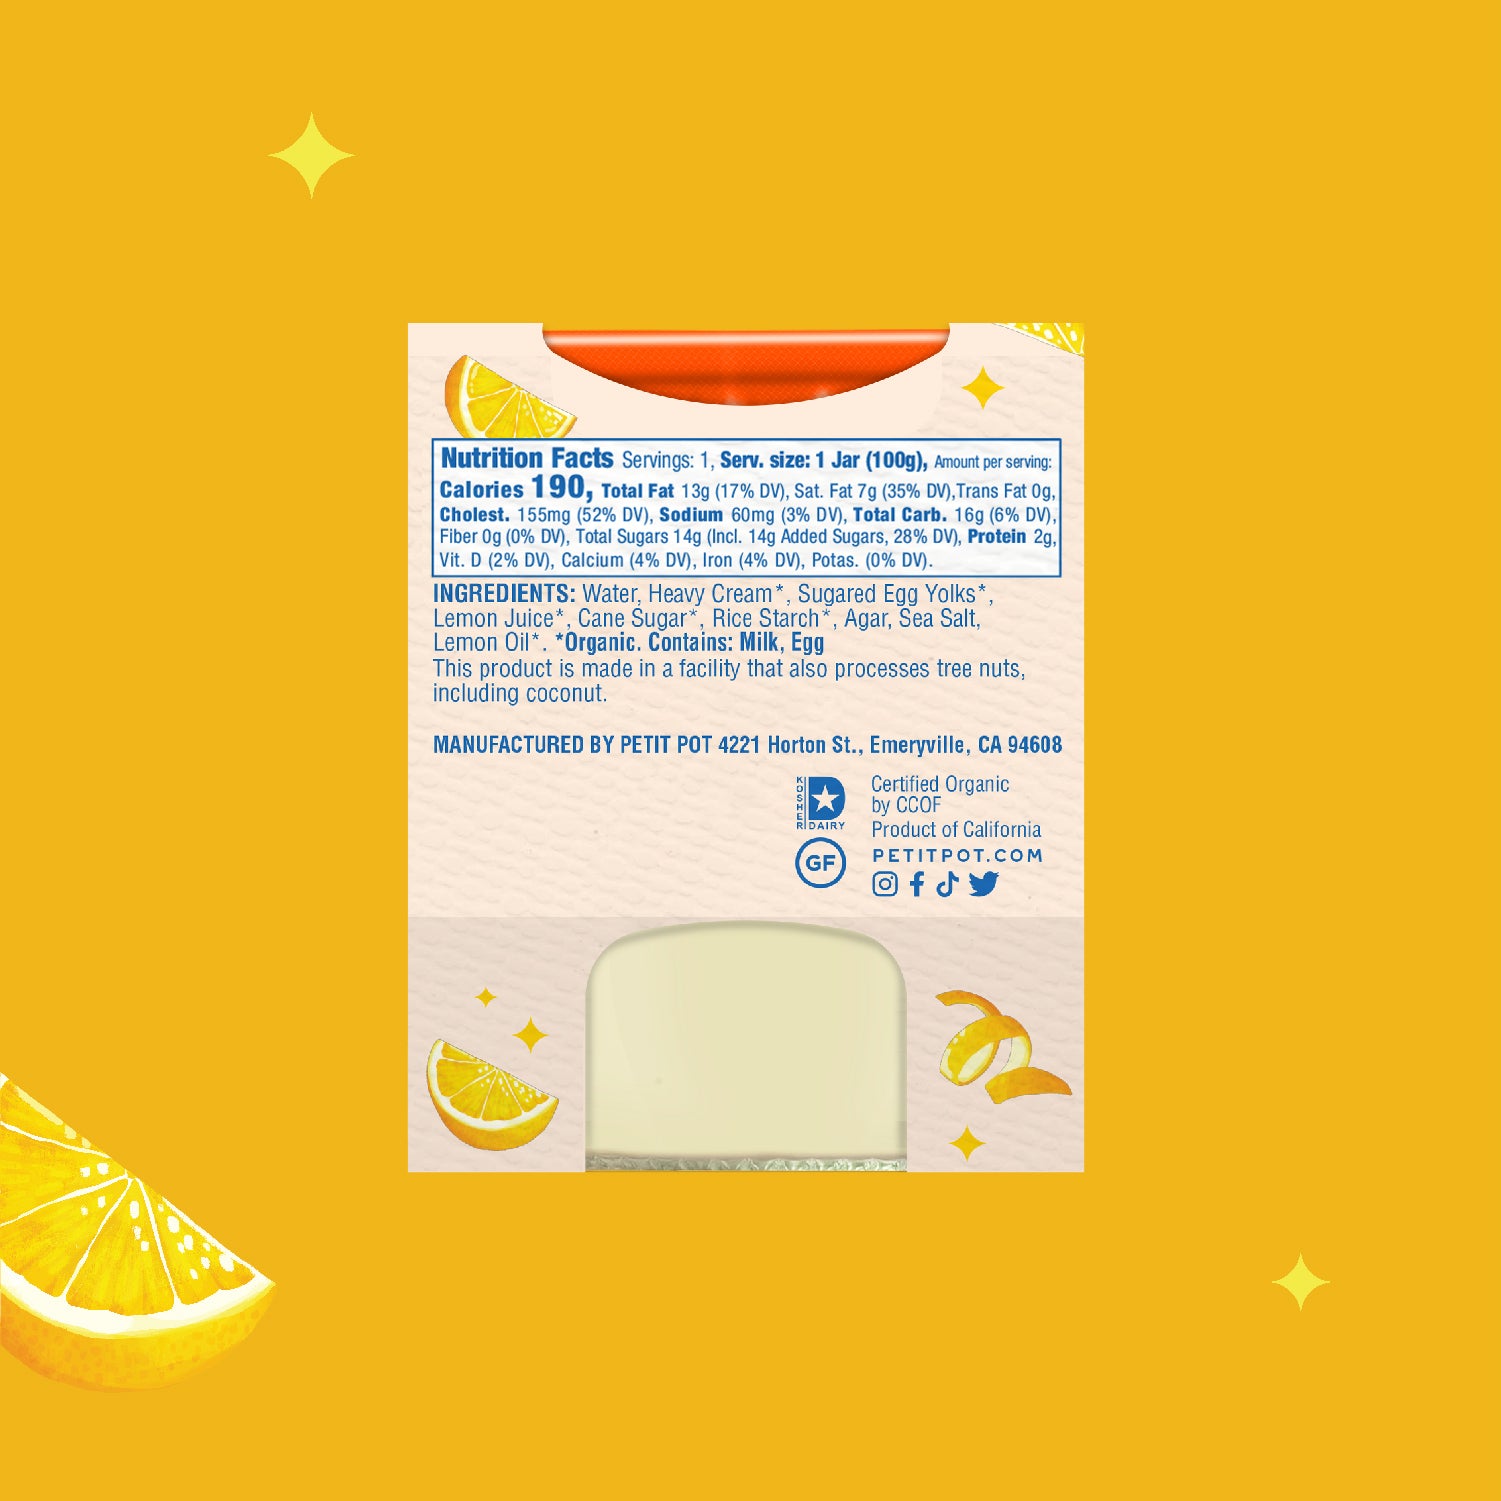 Pot De Crème - Lemon